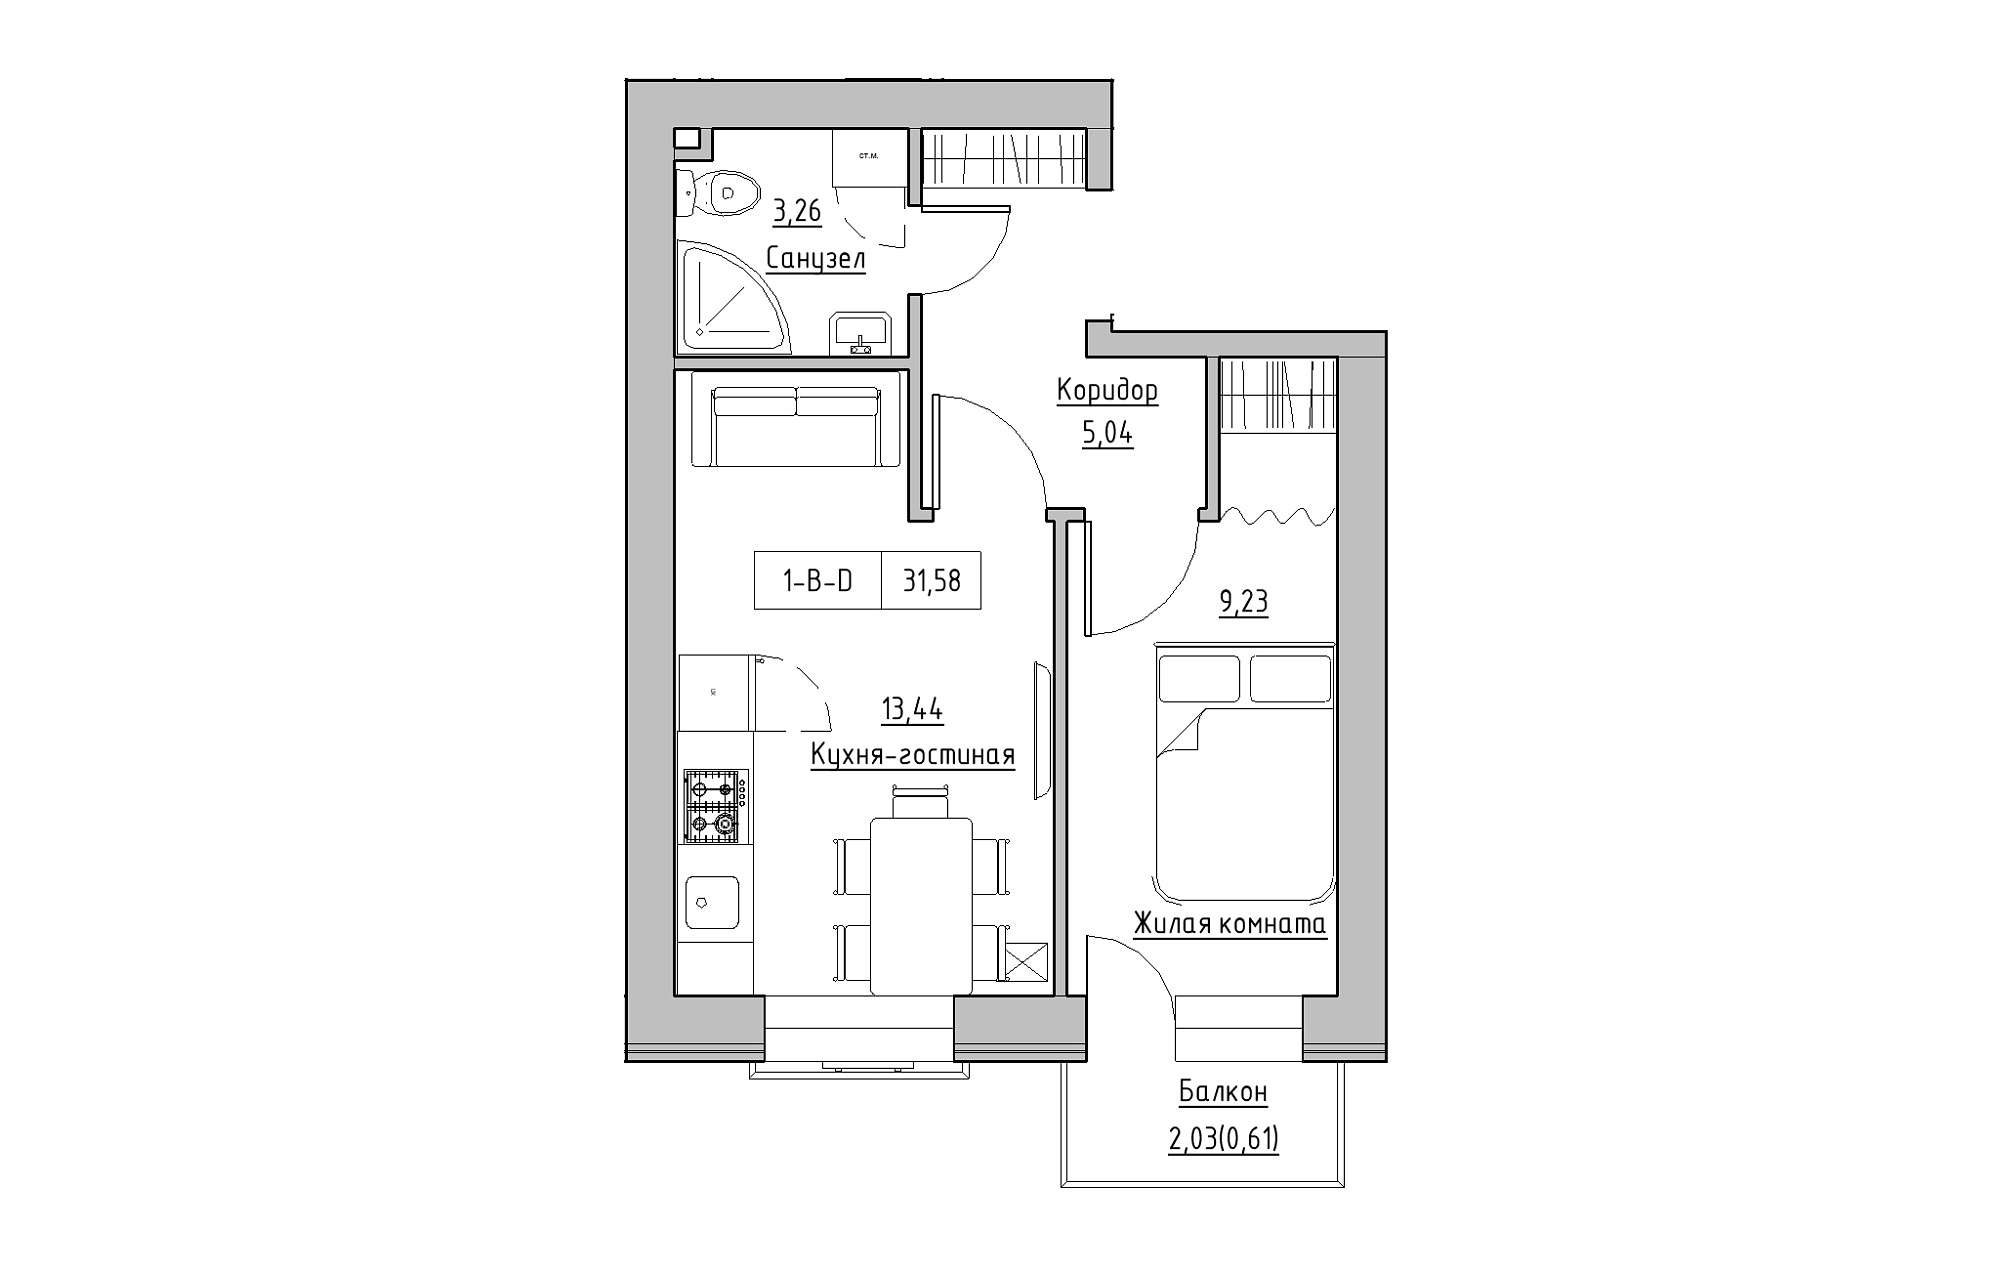 Планування 1-к квартира площею 31.58м2, KS-018-02/0003.